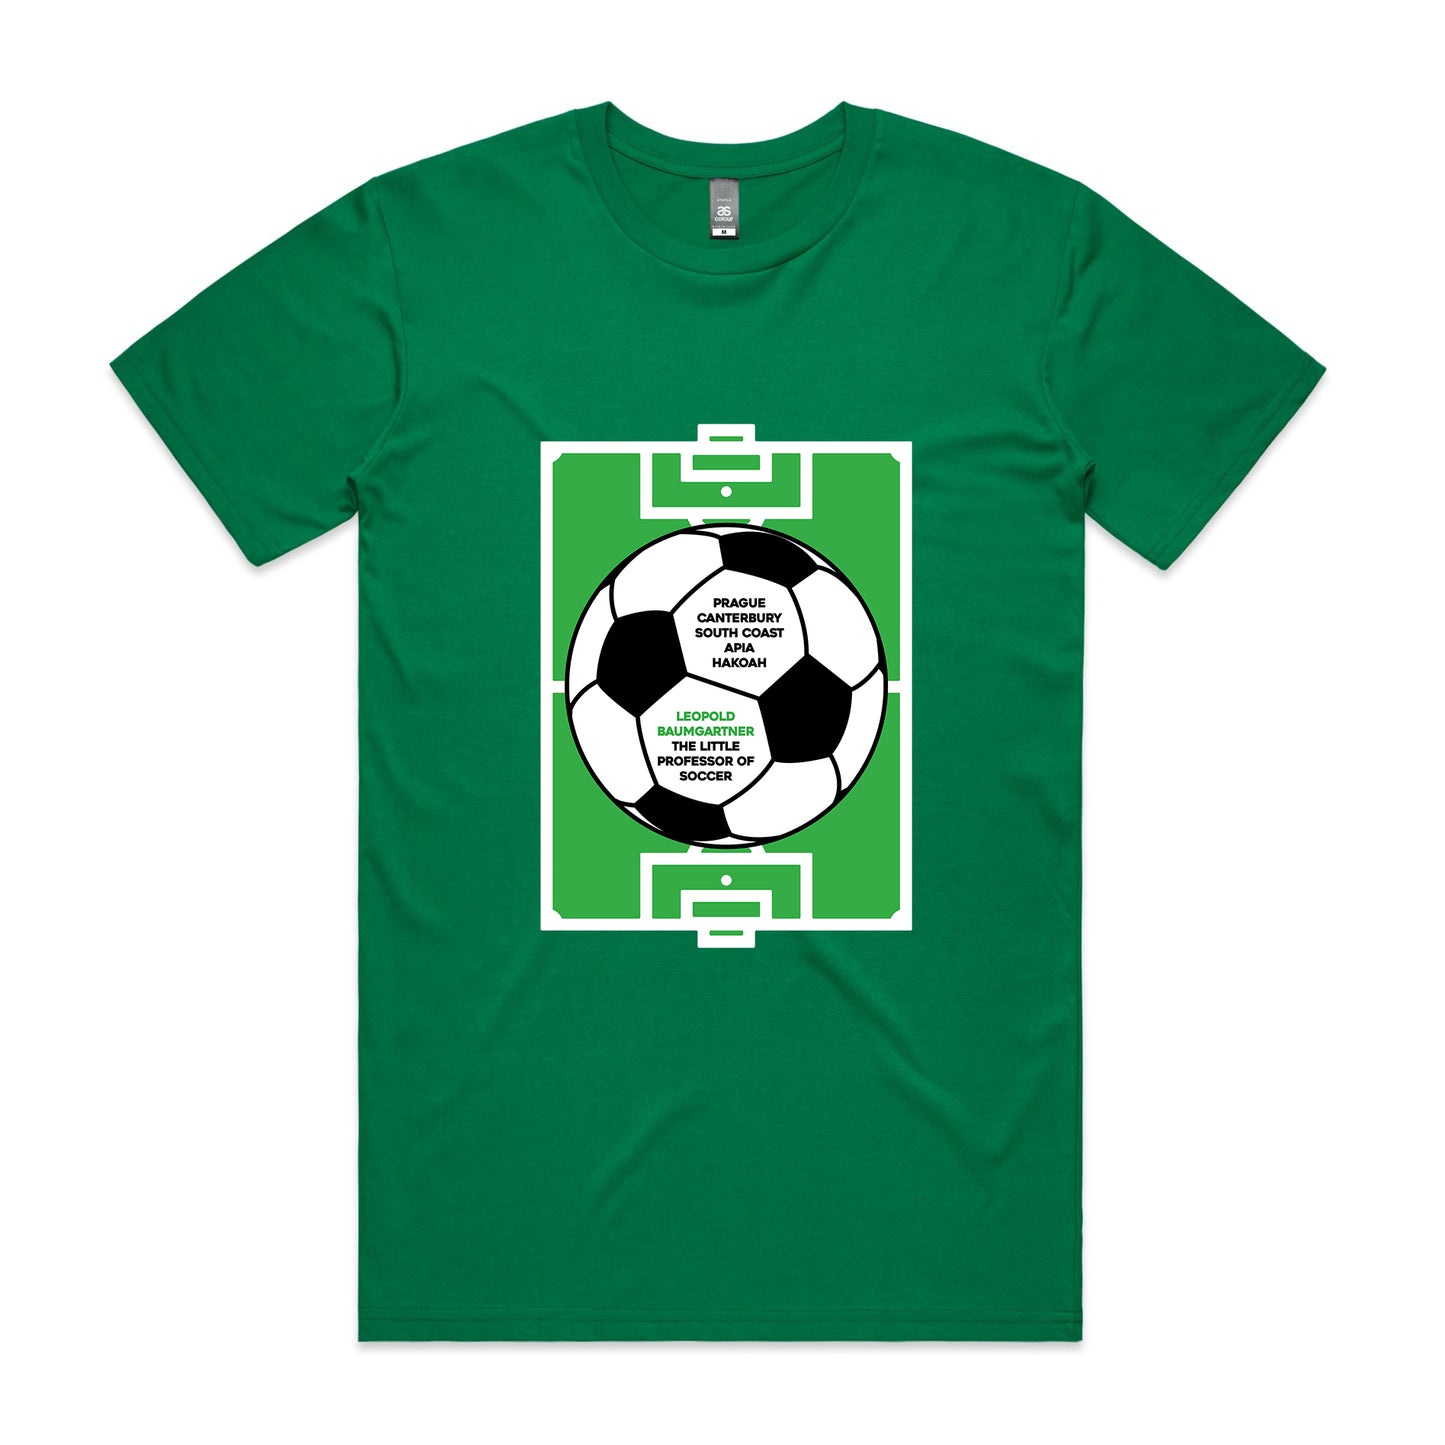 The Little Professor of Soccer T-shirt